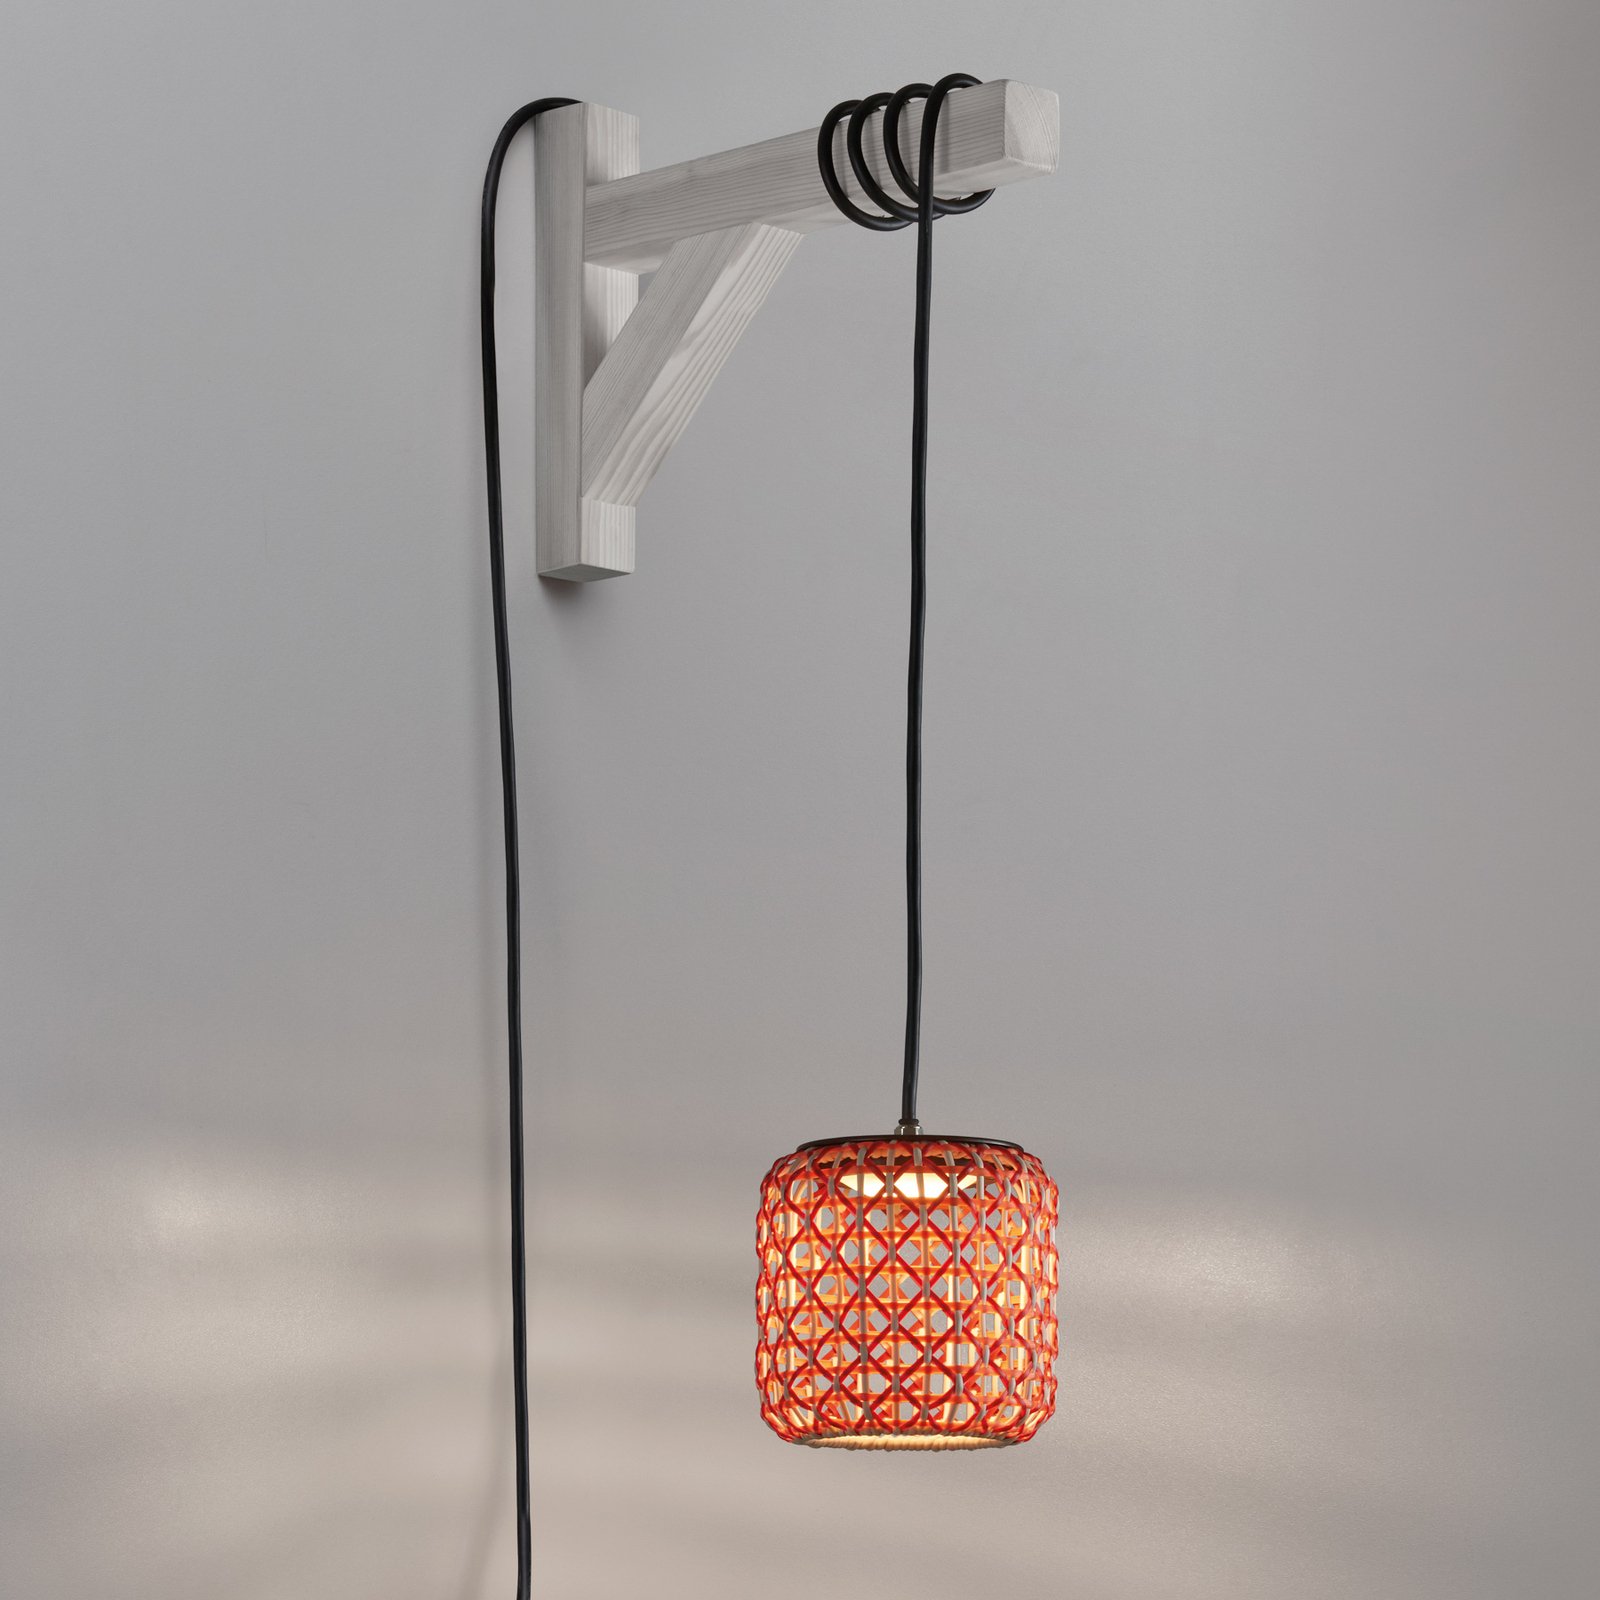 Bover Nans S/16/H LED hanglamp met stekker rood